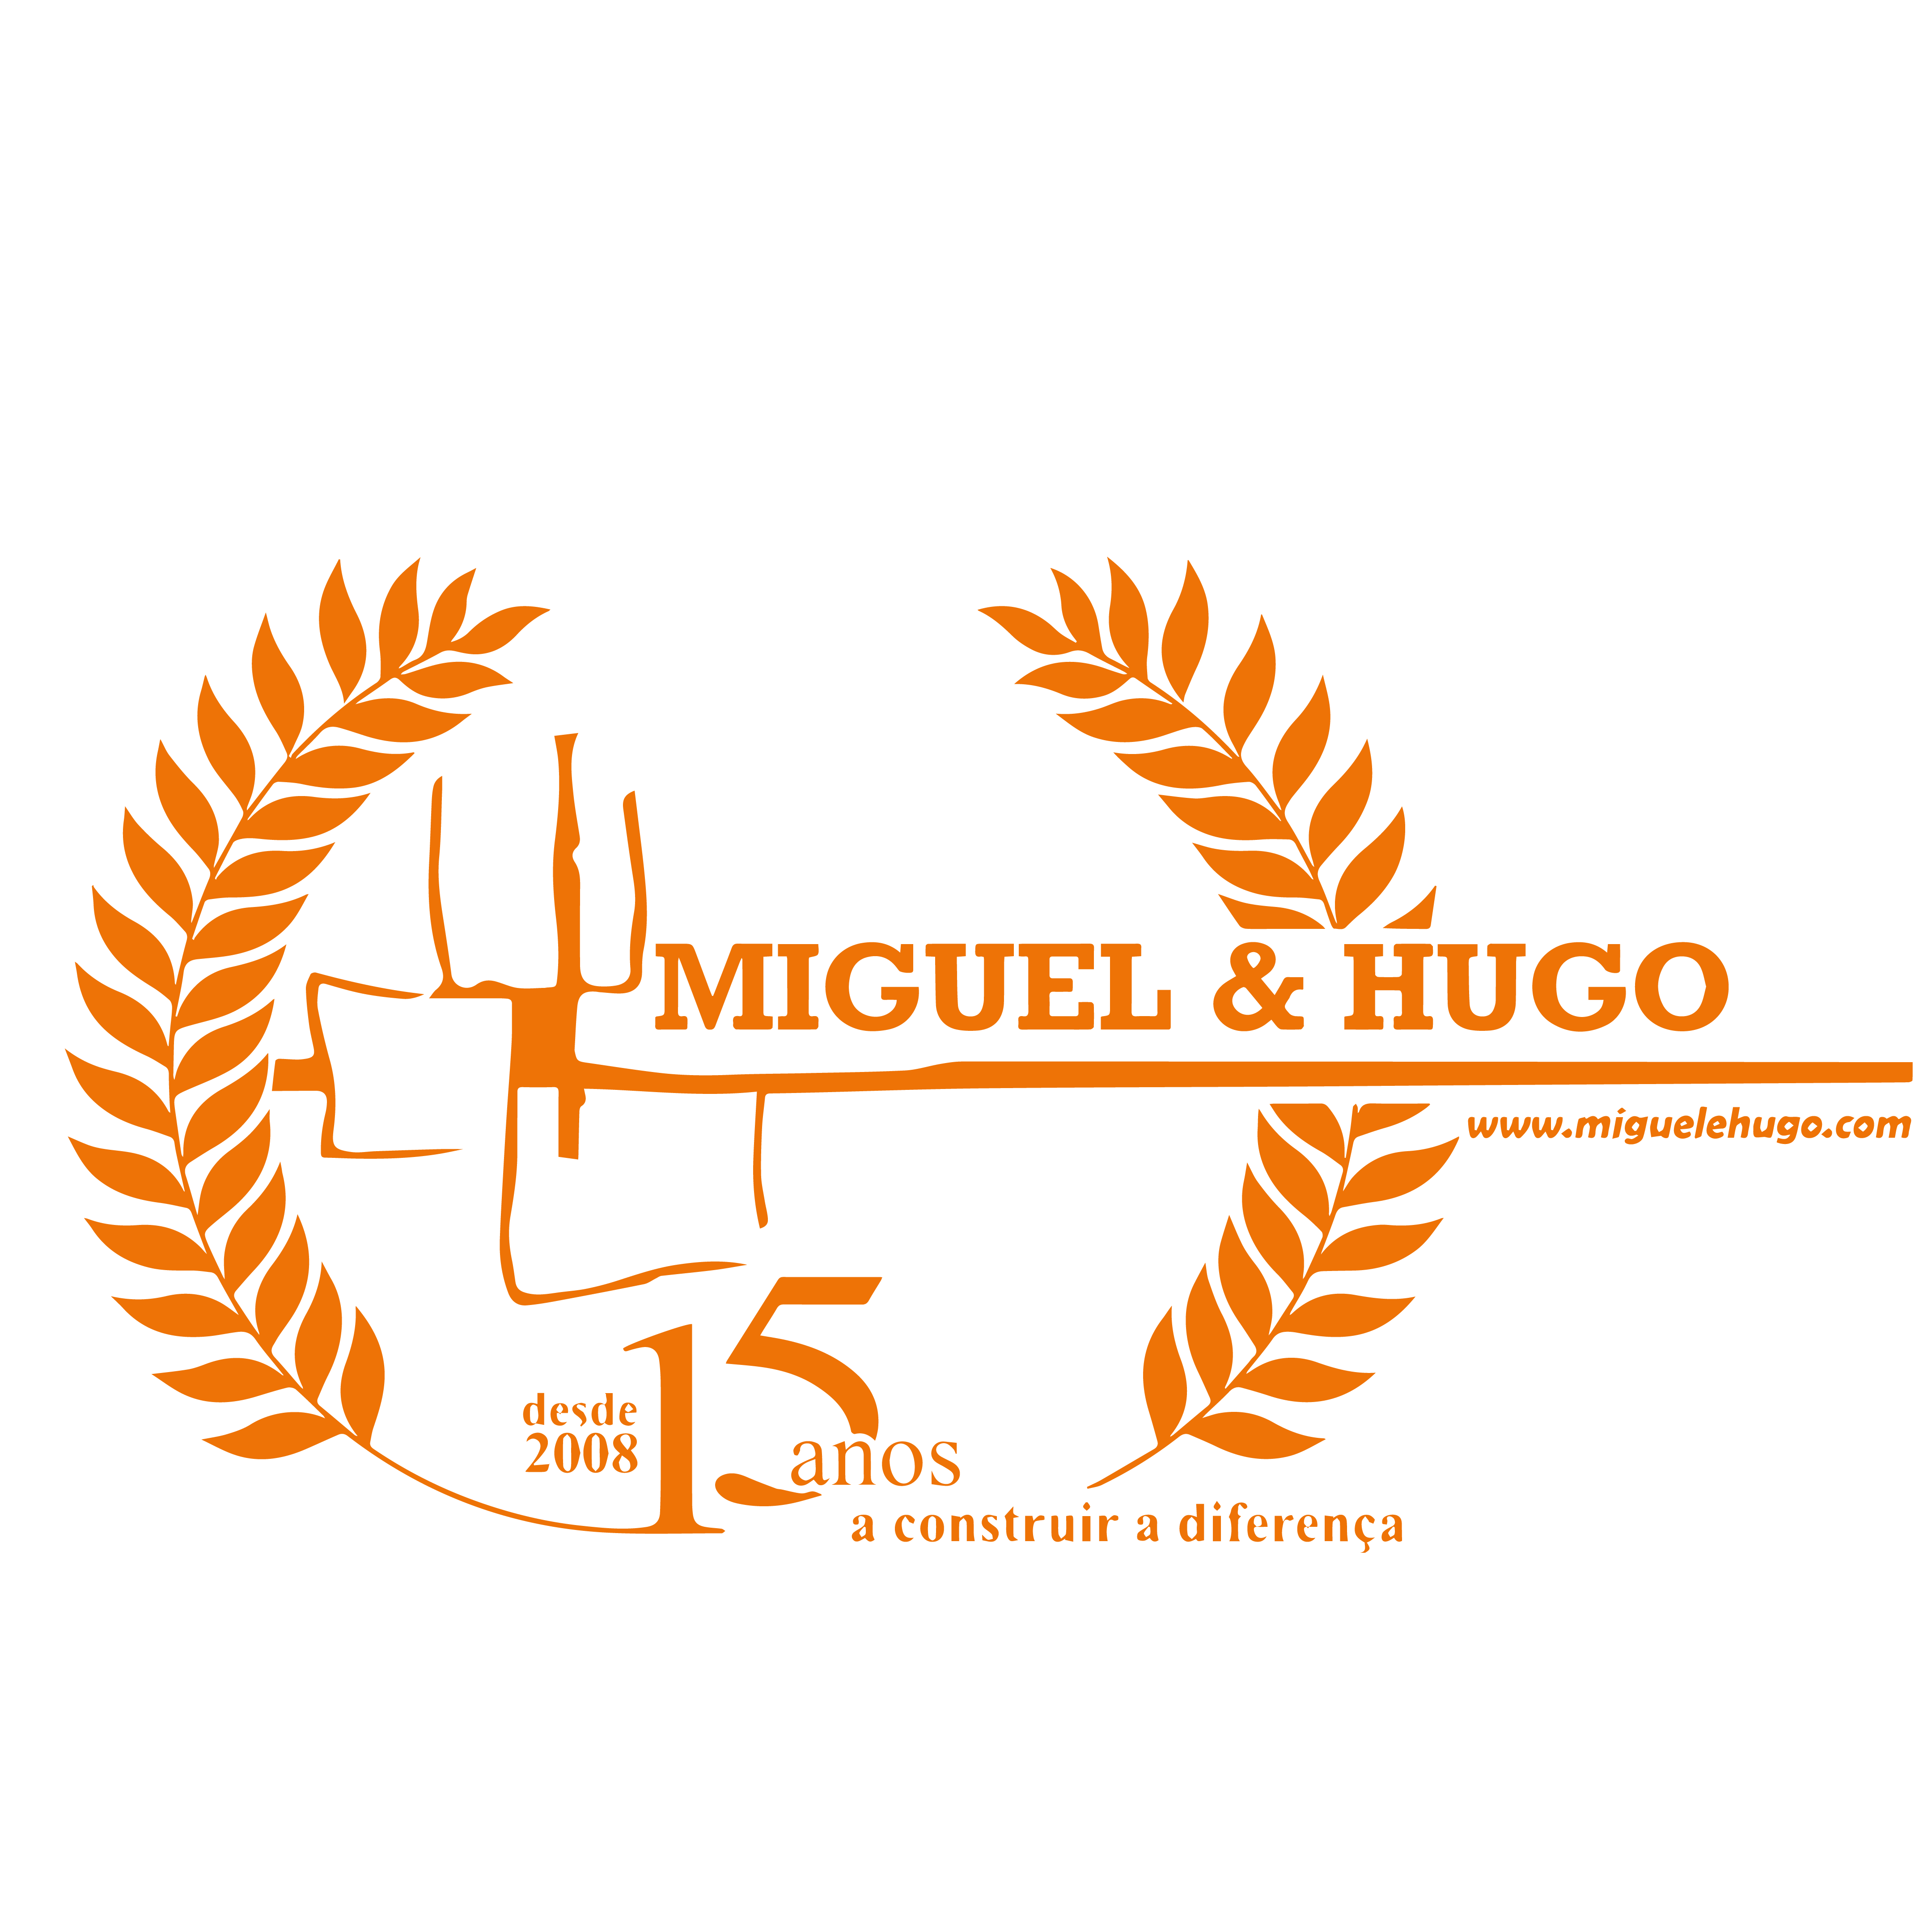 Miguel e Hugo - Remodelações e Construção Civil